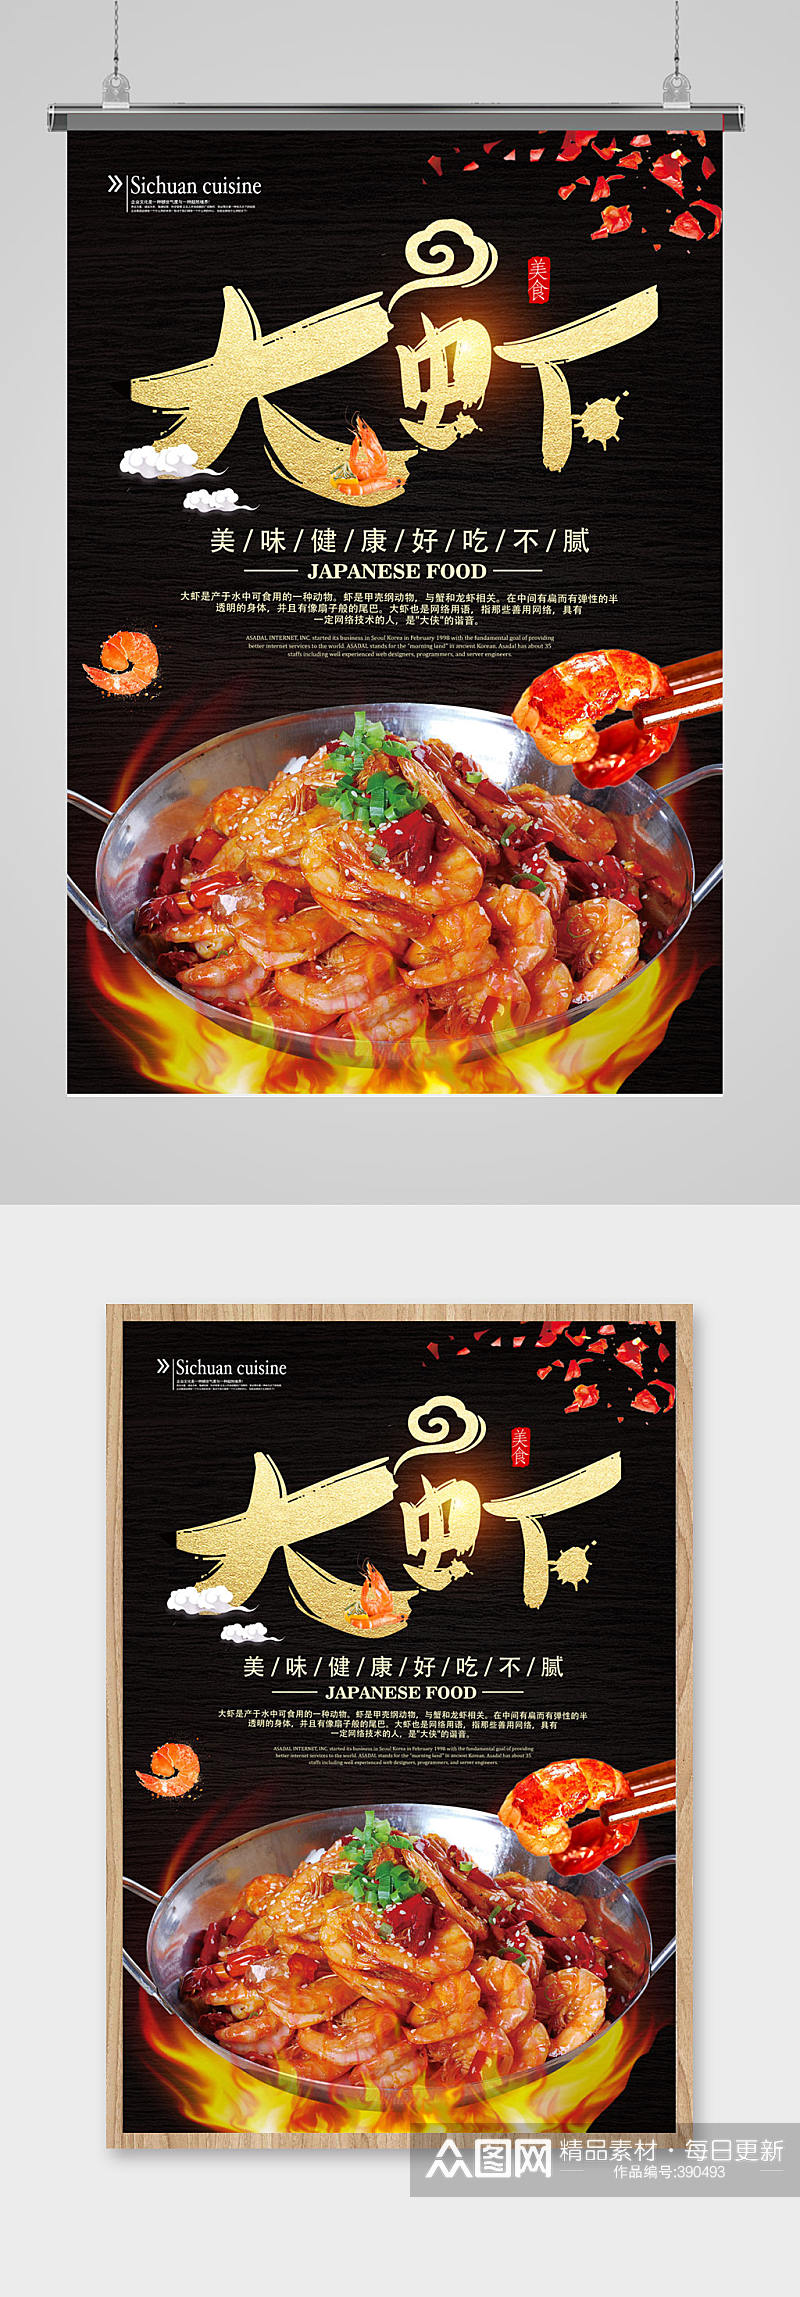 大虾美食促销海报设计素材